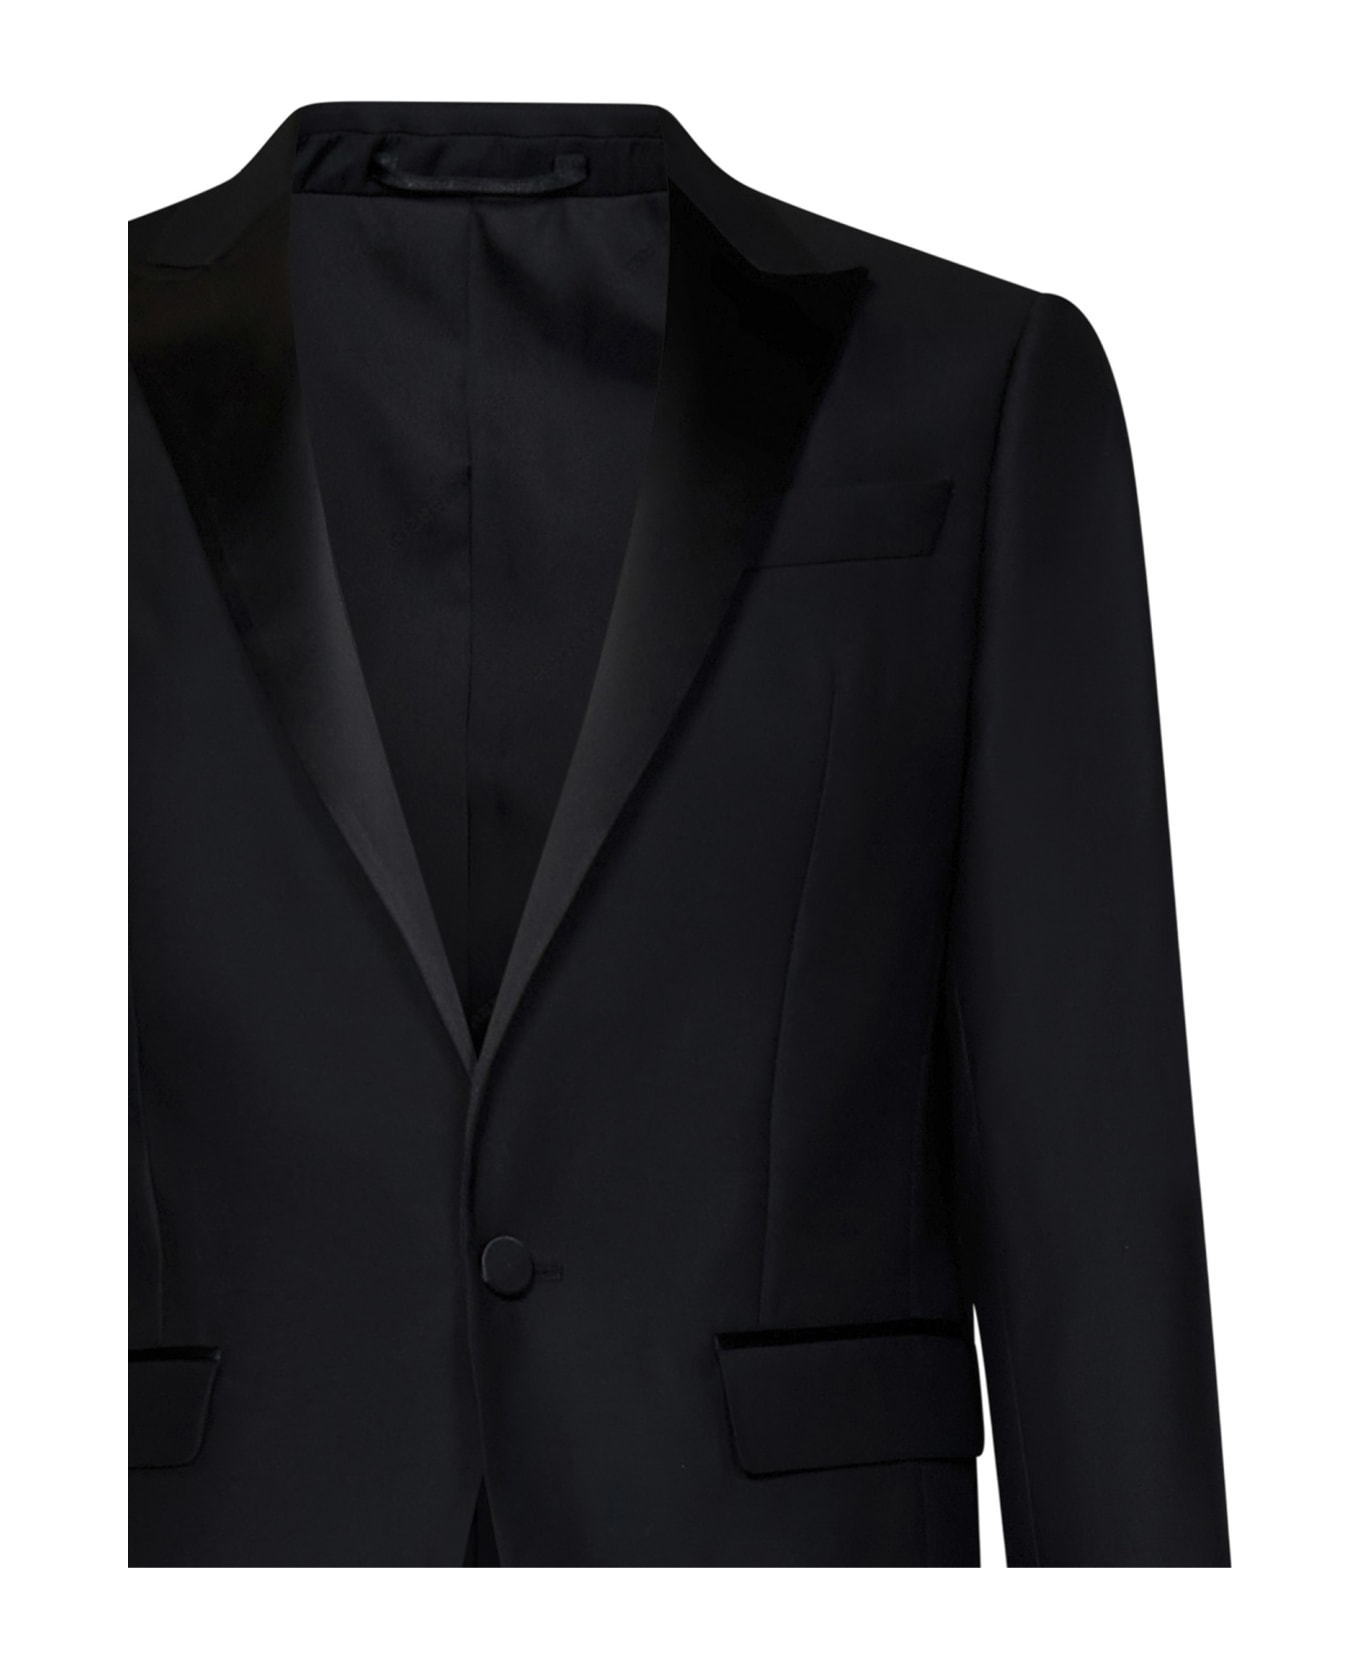 Dsquared2 Berlin Suit - Black